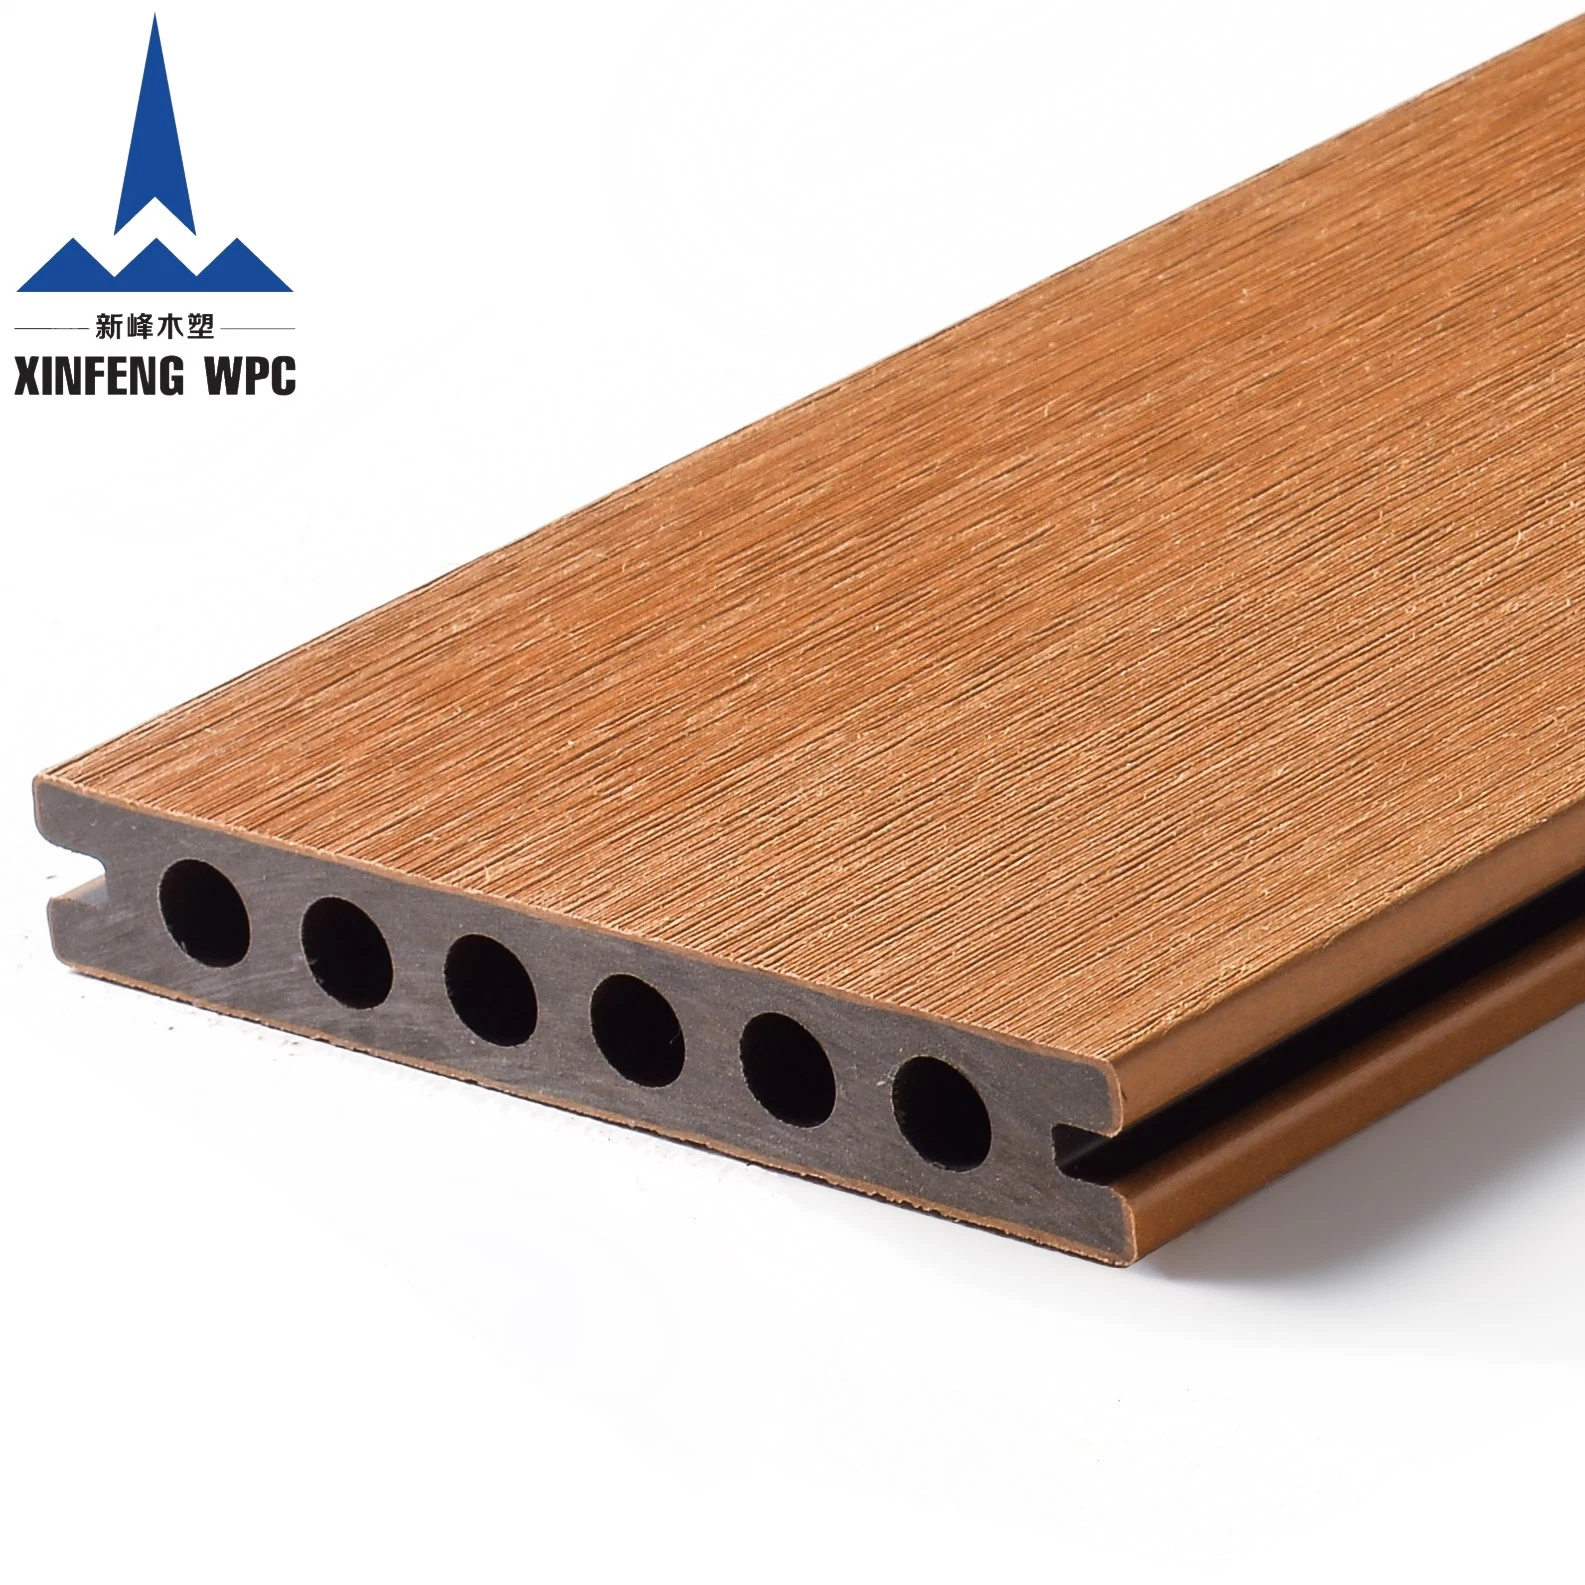 أرضية خشبية بلاستيكية عالية الجودة قابلة للطرد من الخشب مع أرضية WPC